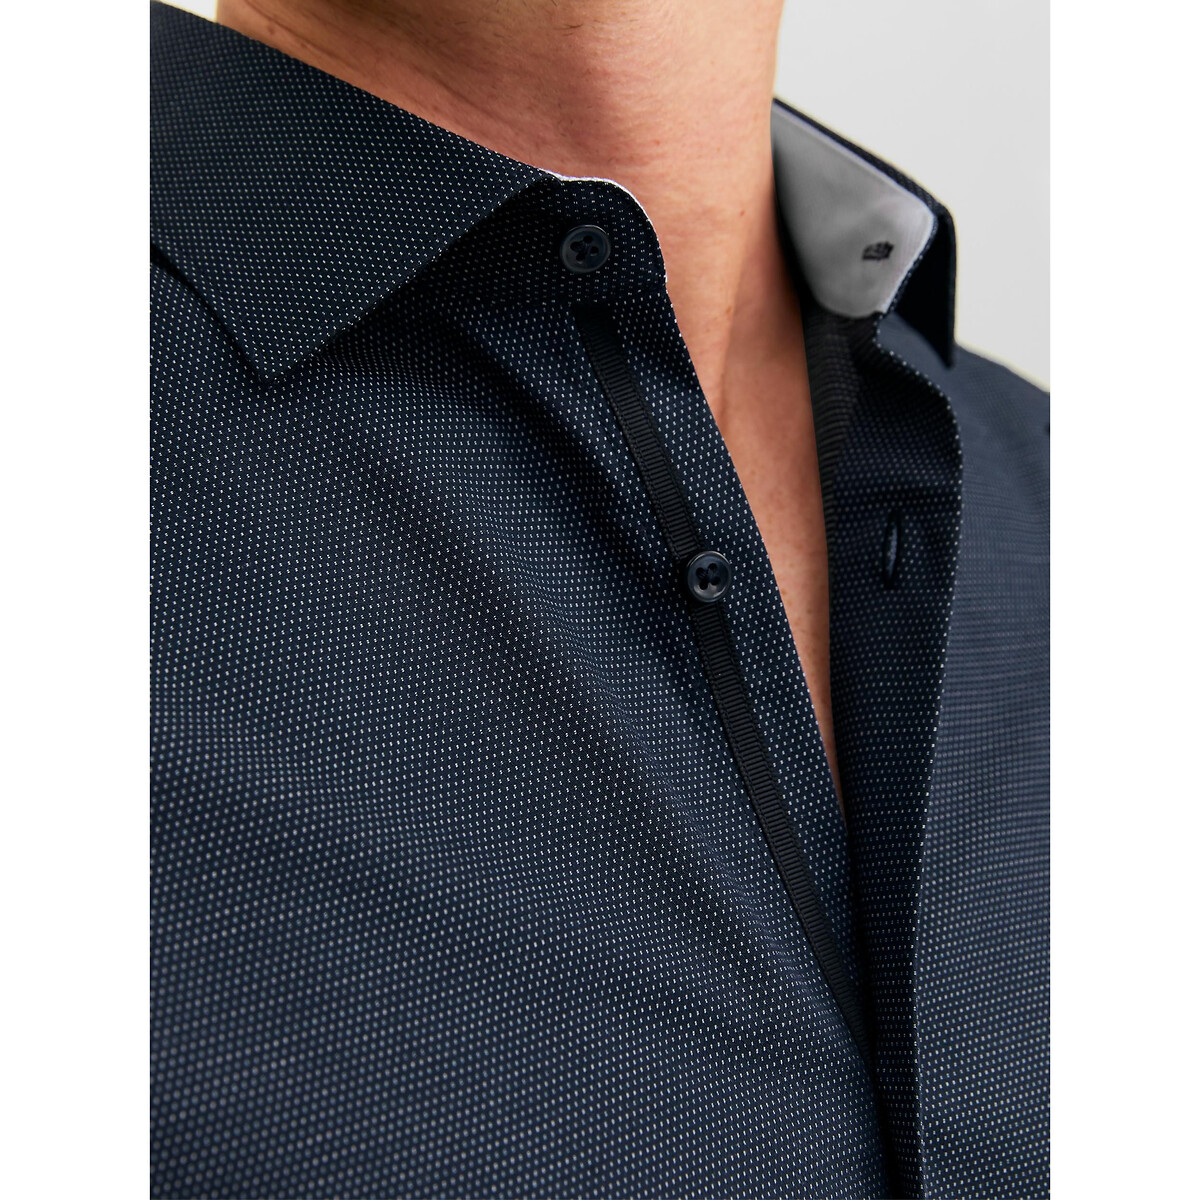 Рубашка Слим из ткани стрейч L синий LaRedoute, размер L - фото 3